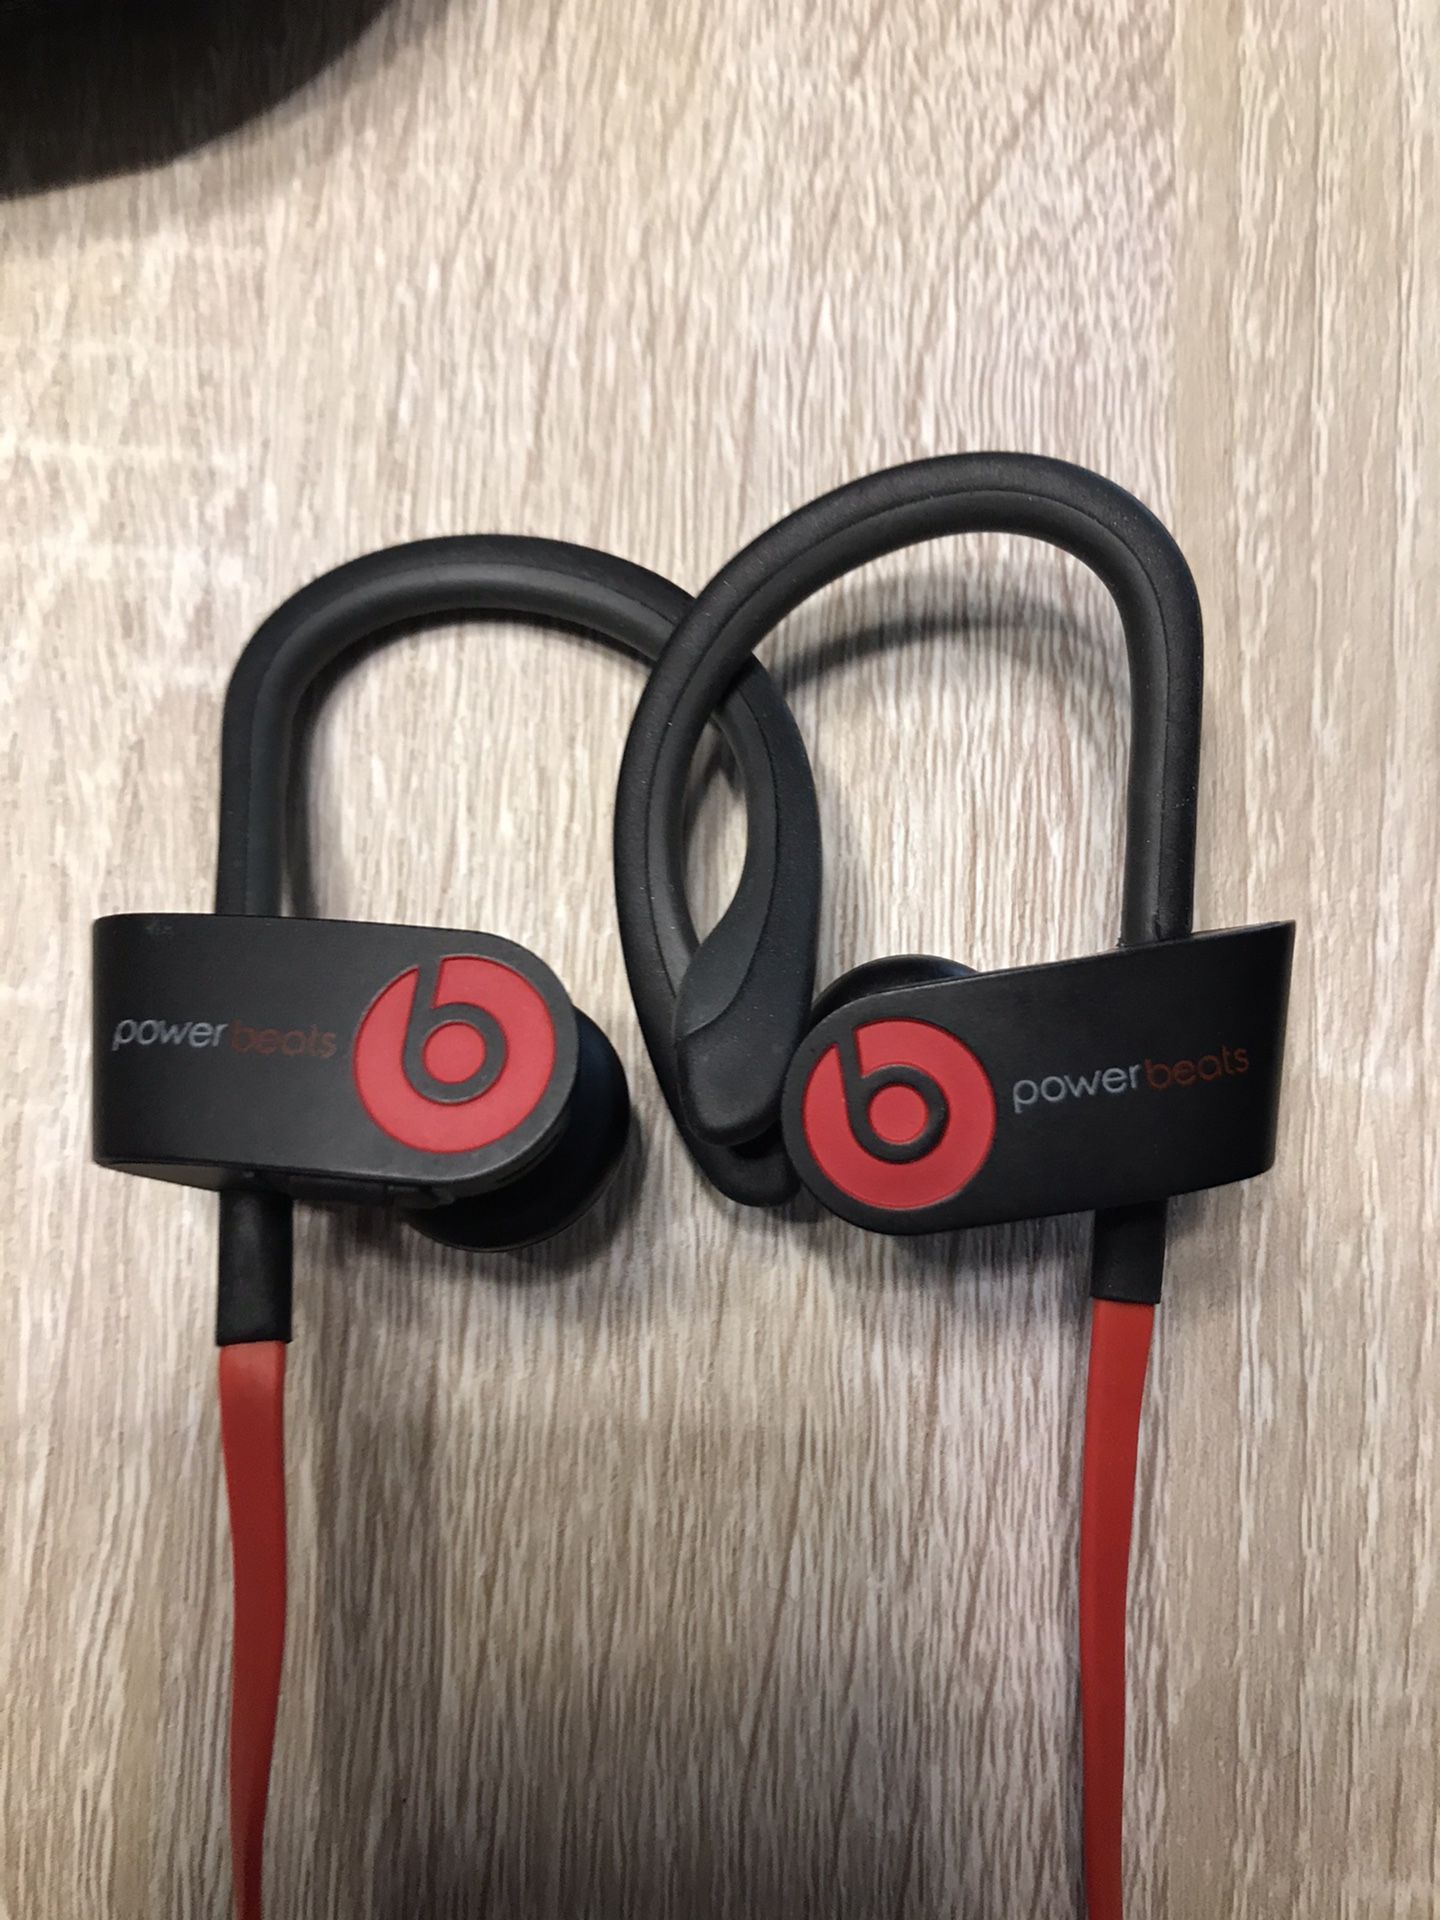 PowerBeats 2 headphones